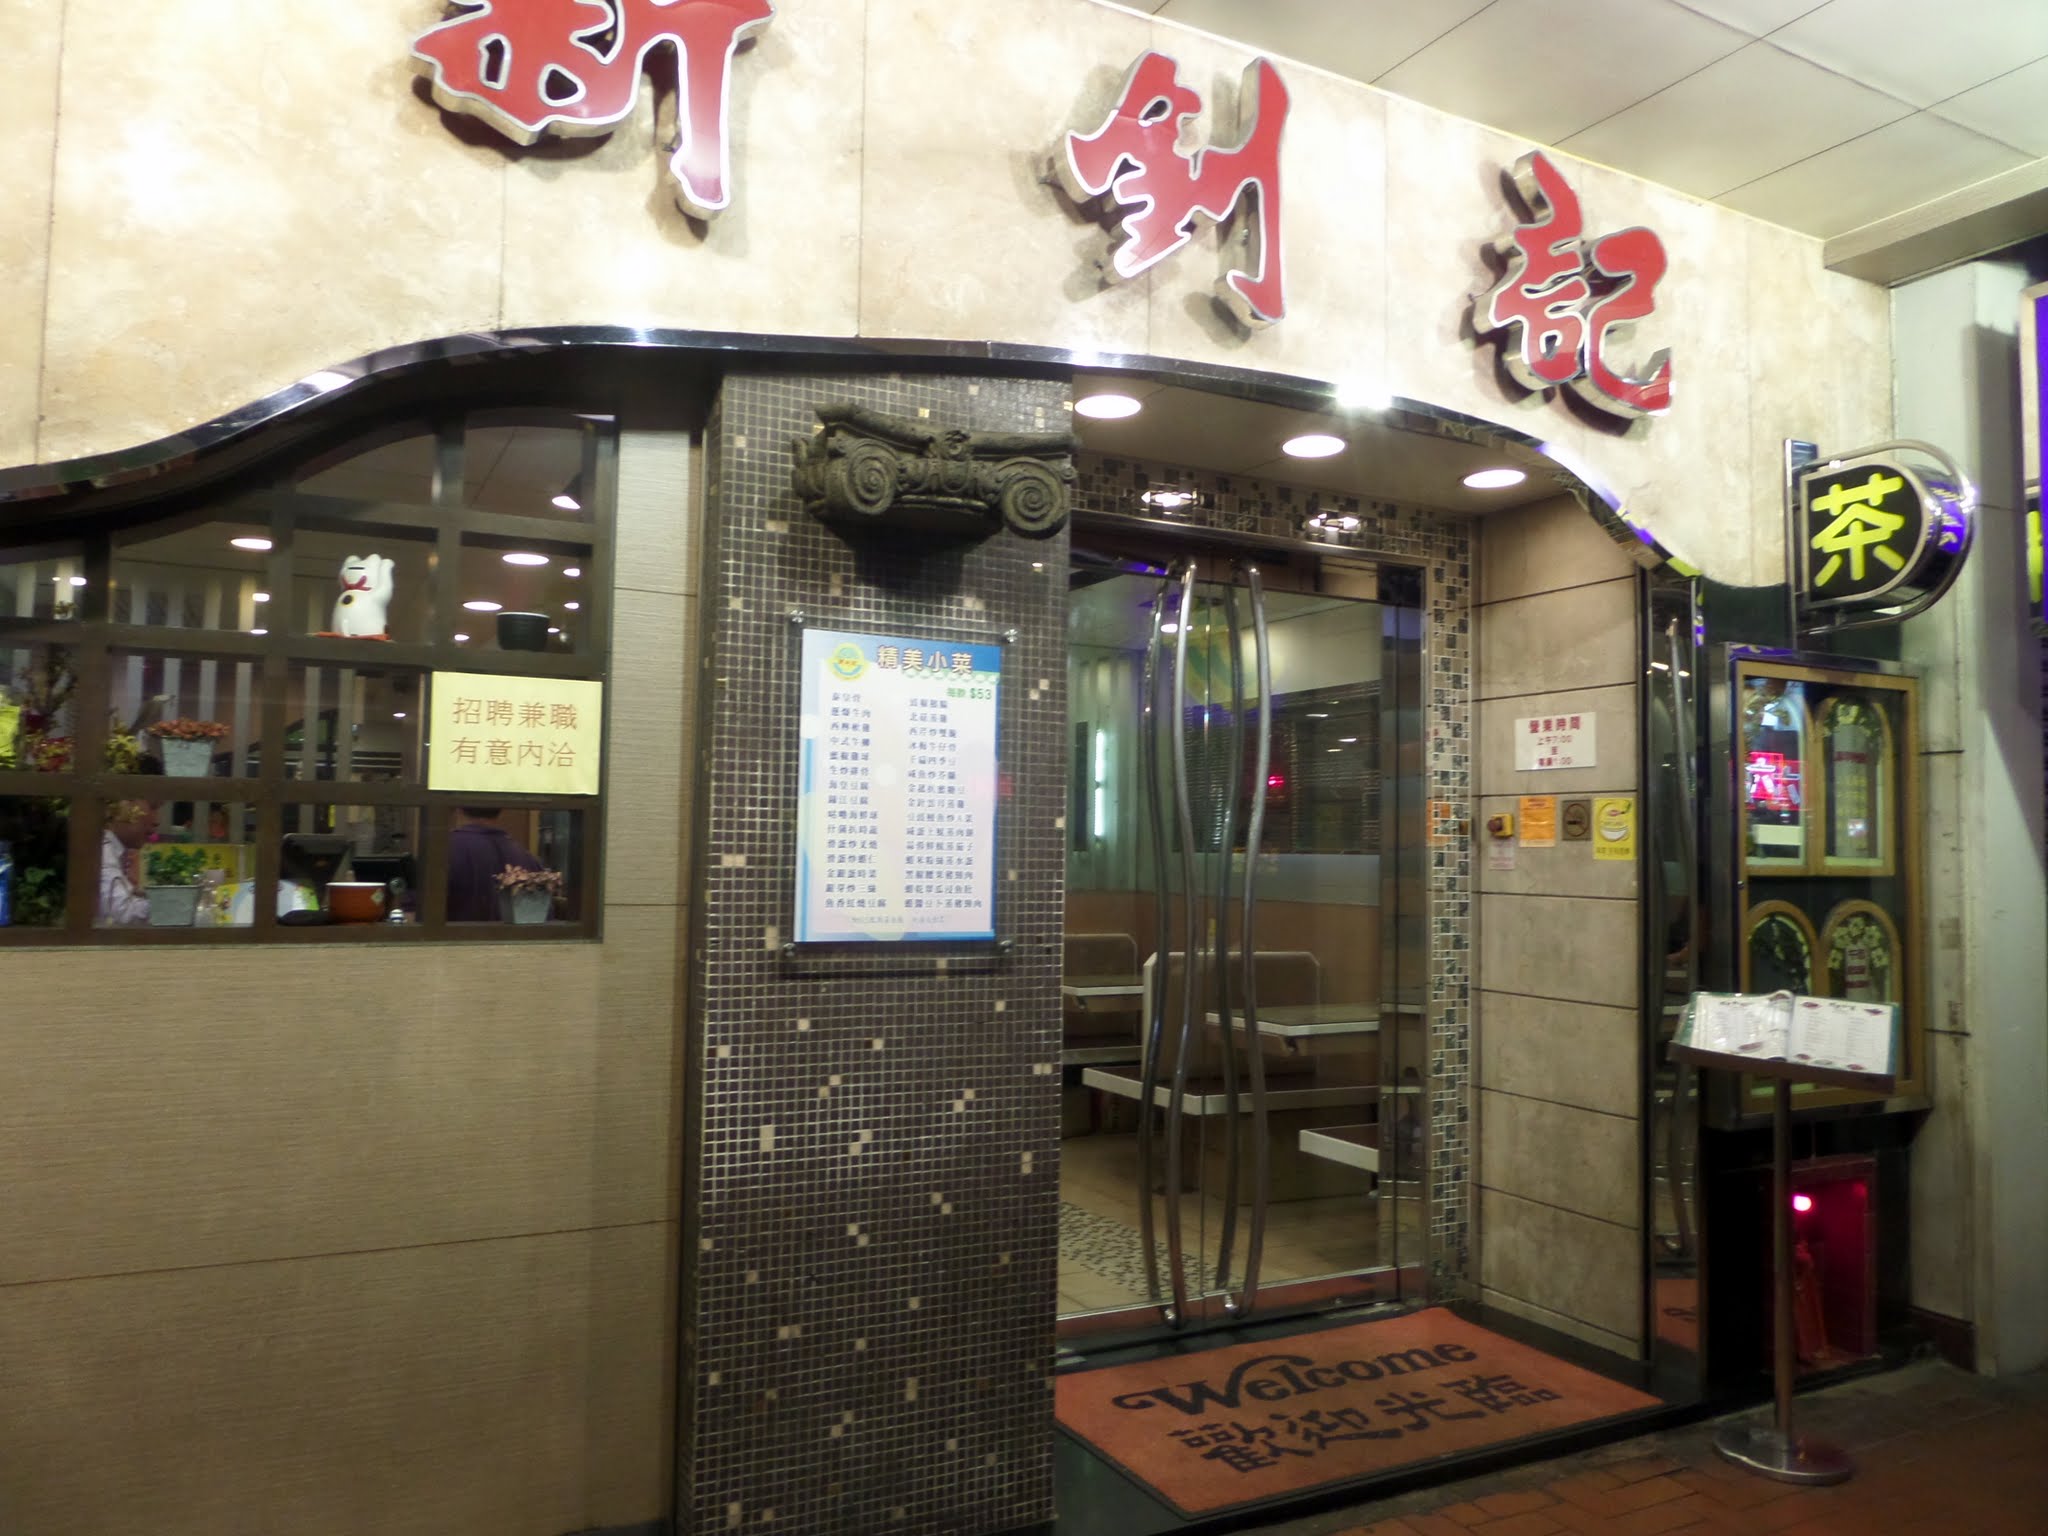 Sun Chiu Kee Restaurant, North Point, Hong Kong 